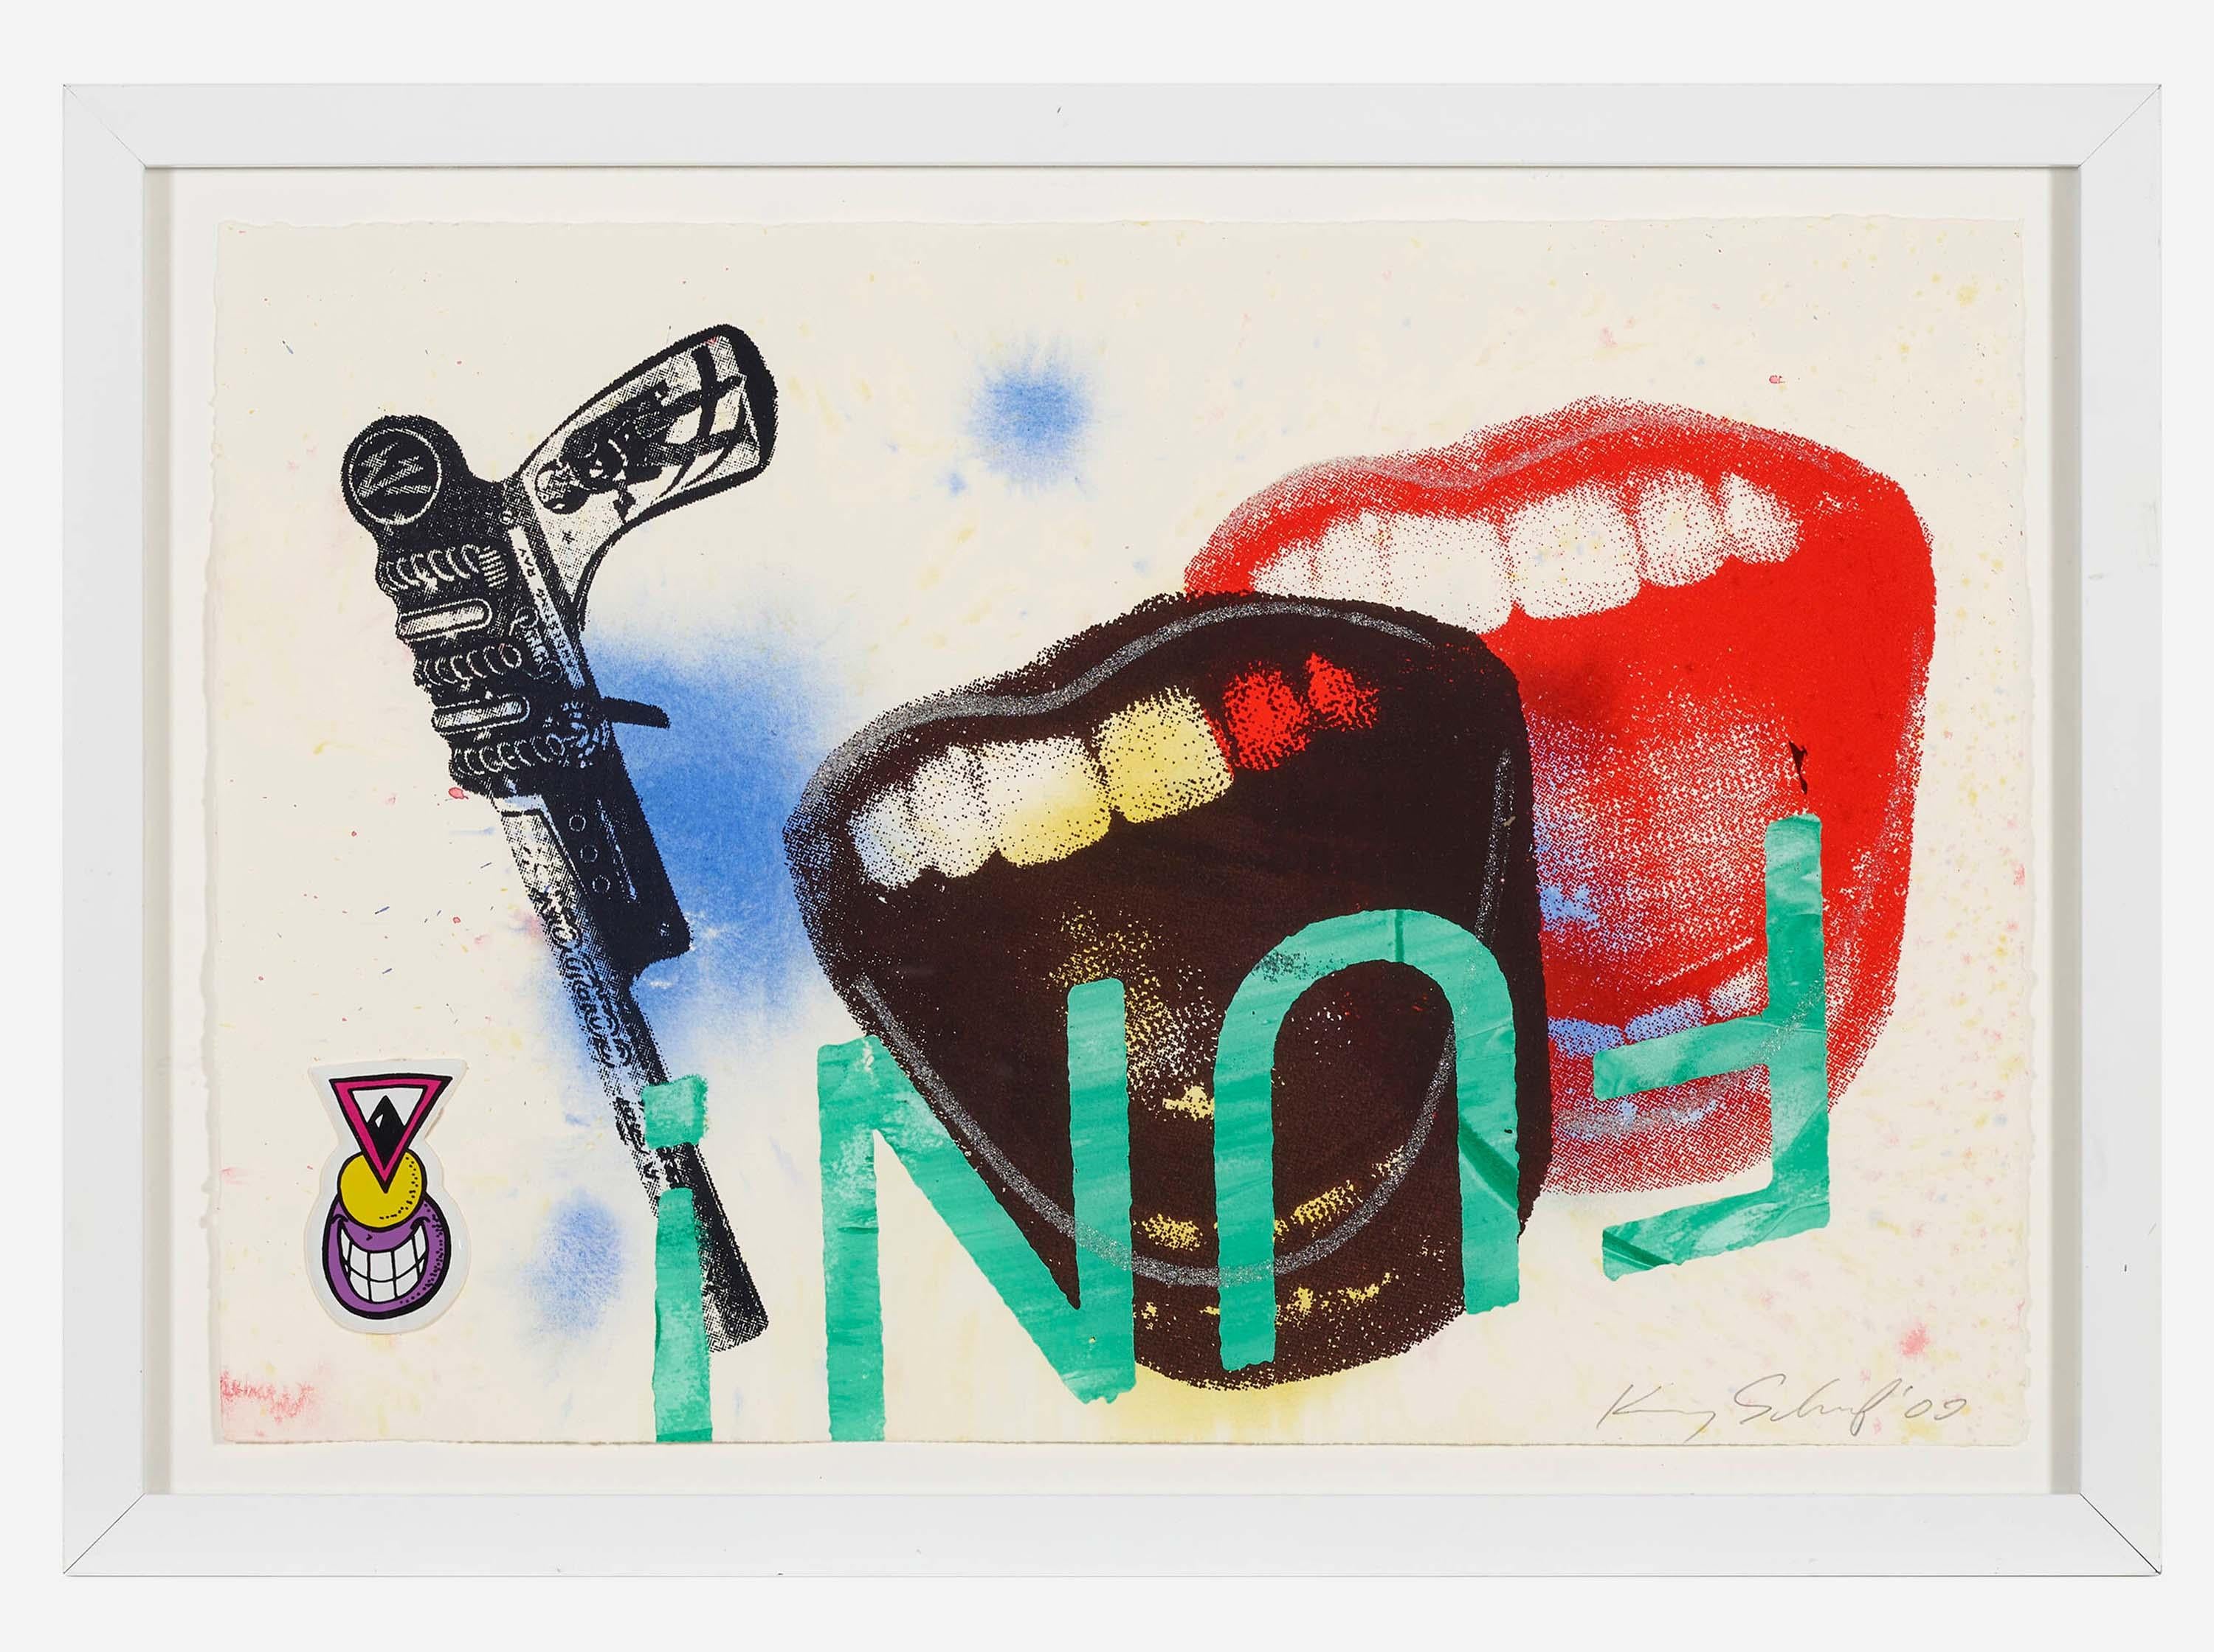 Kenny Scharf "Fun" 2009 :
Œuvre très décorative de Kenny Scharf de 2009, utilisant la sérigraphie et l'acrylique - signée par l'artiste en bas à droite. Encadré. 

Collage mixte sur papier Arches. 
14 h × 23 w in (36 × 58 cm). Une pièce unique. L'un